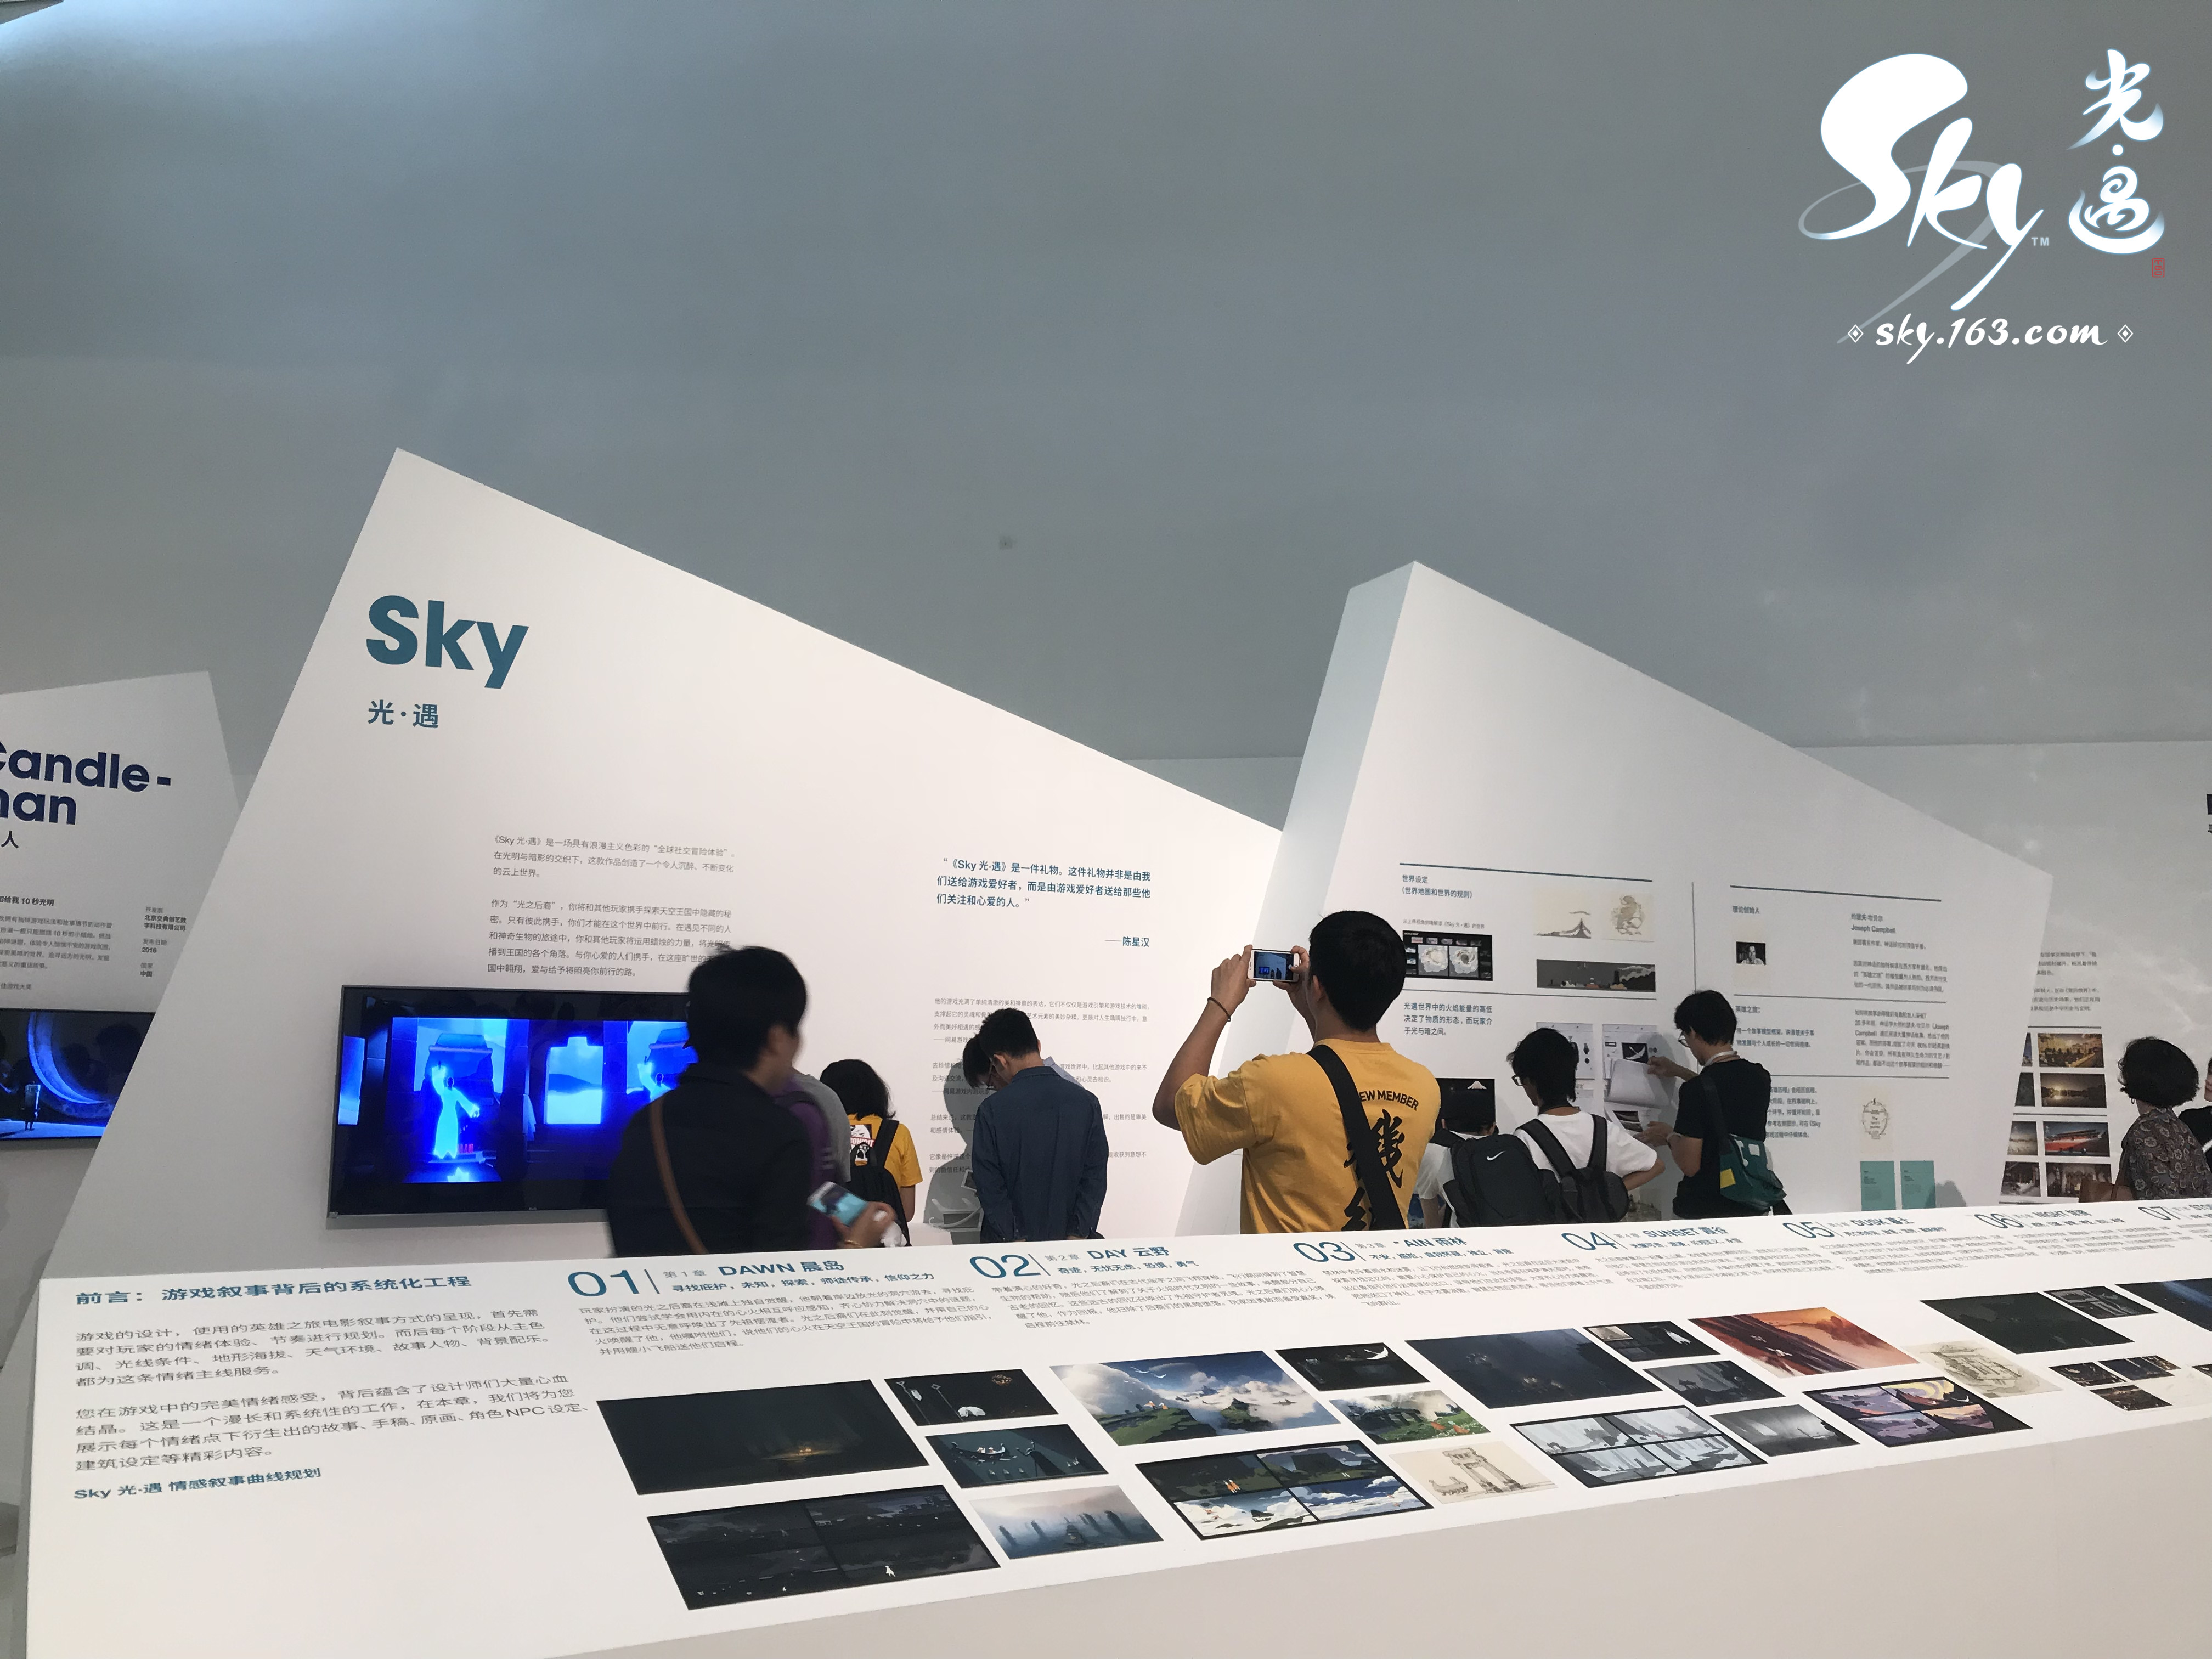 《Sky光·遇》参展央美百年校庆，获颁“文化艺术传播奖”